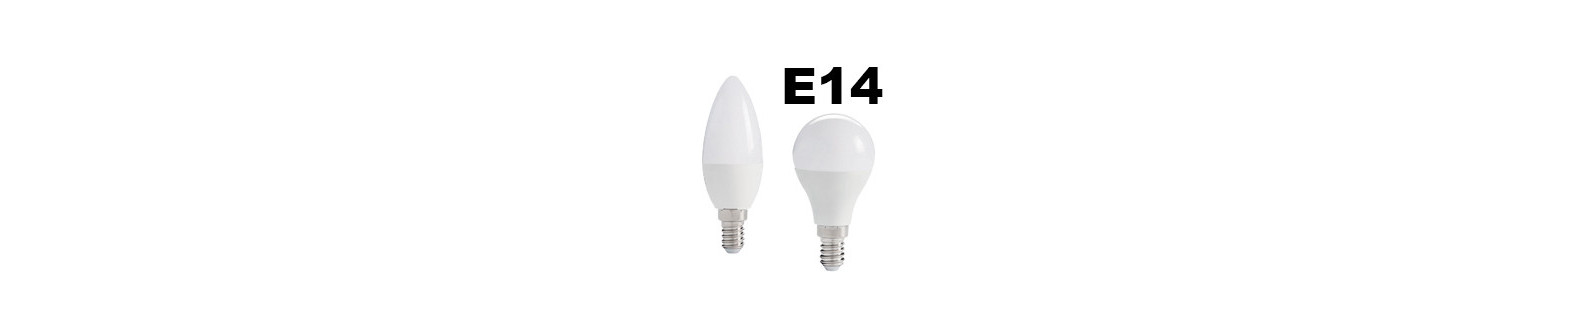 Lampe et ampoule Led à petit prix - garantie 2 ans - qualité PRO